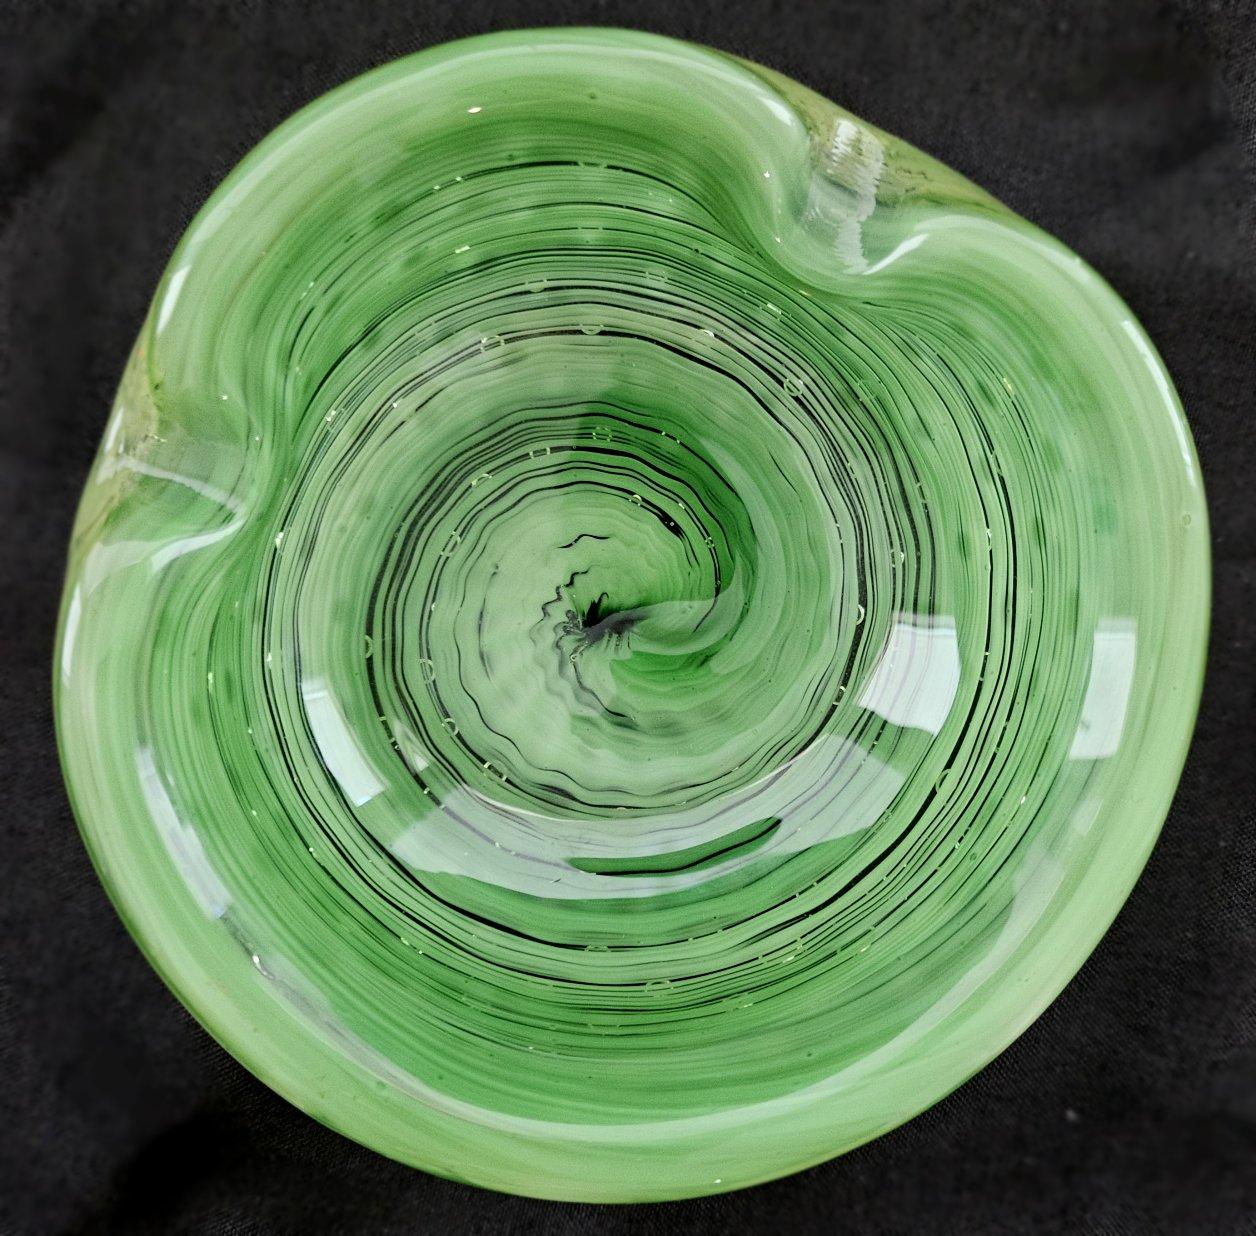 Vintage Murano Glass Ashtray, Optic Swirl & Bullicante (bulles contrôlées)
Excellent état vintage. Pas d'ébréchures ni de fissures.
Mesure environ 5 x 2 pouces.


Les mesures sont approximatives et peuvent varier d'une pièce à l'autre. Veuillez